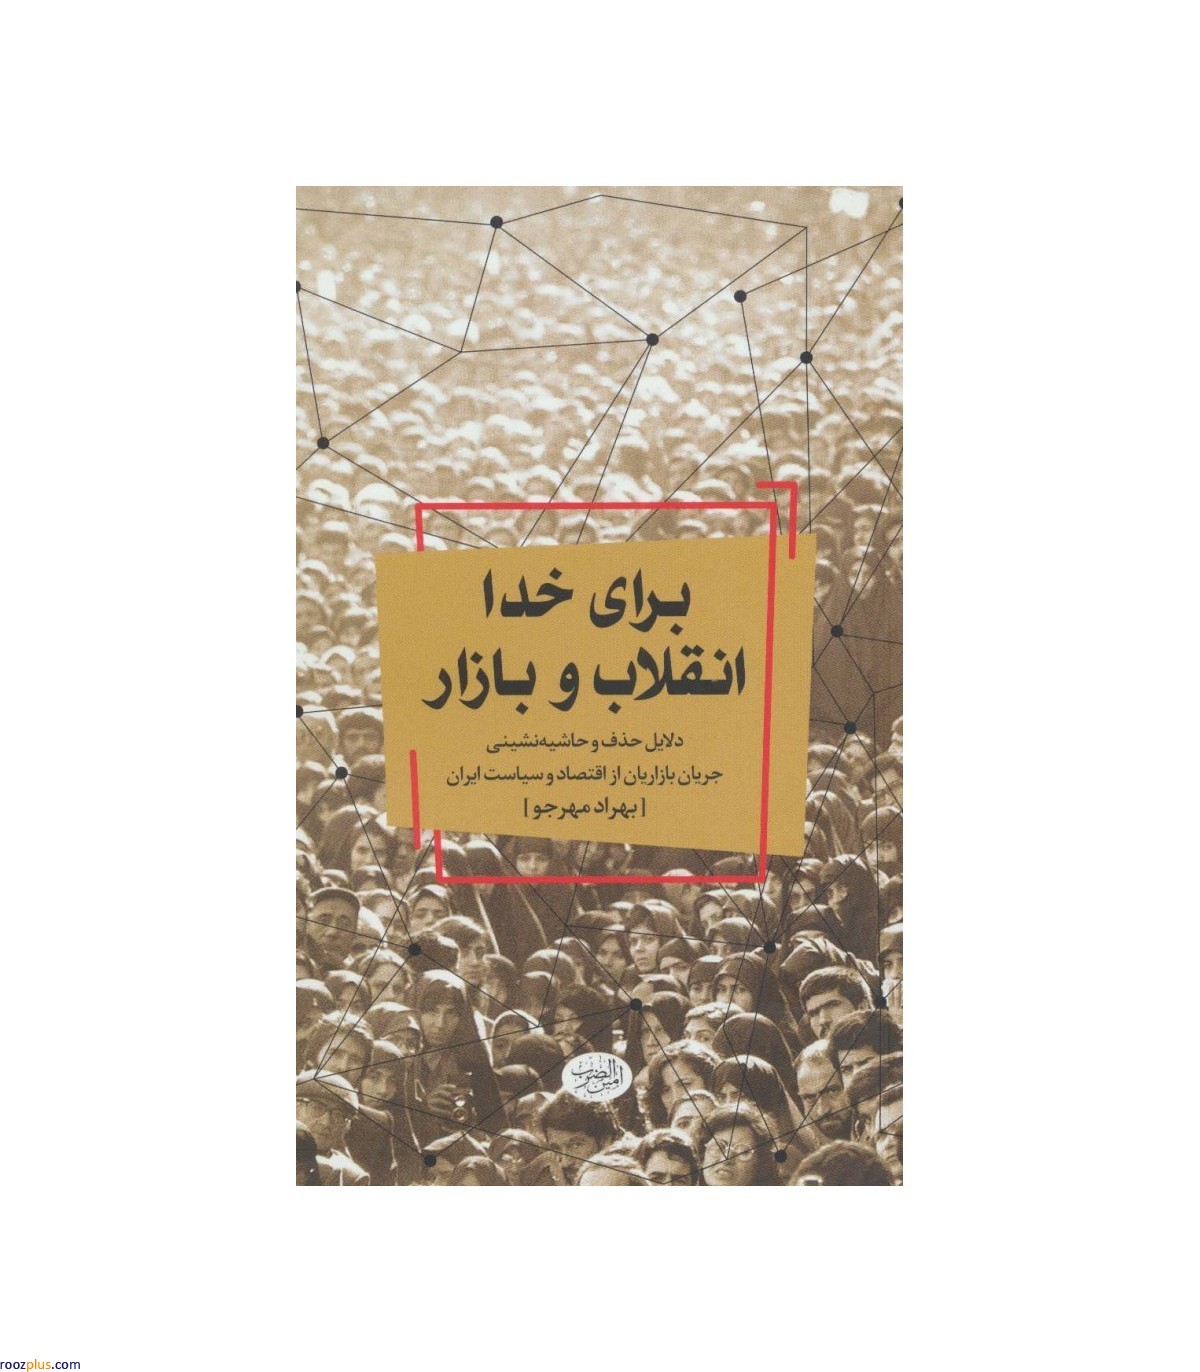 10 کتاب خواندنی در مورد انقلاب اسلامی ایران